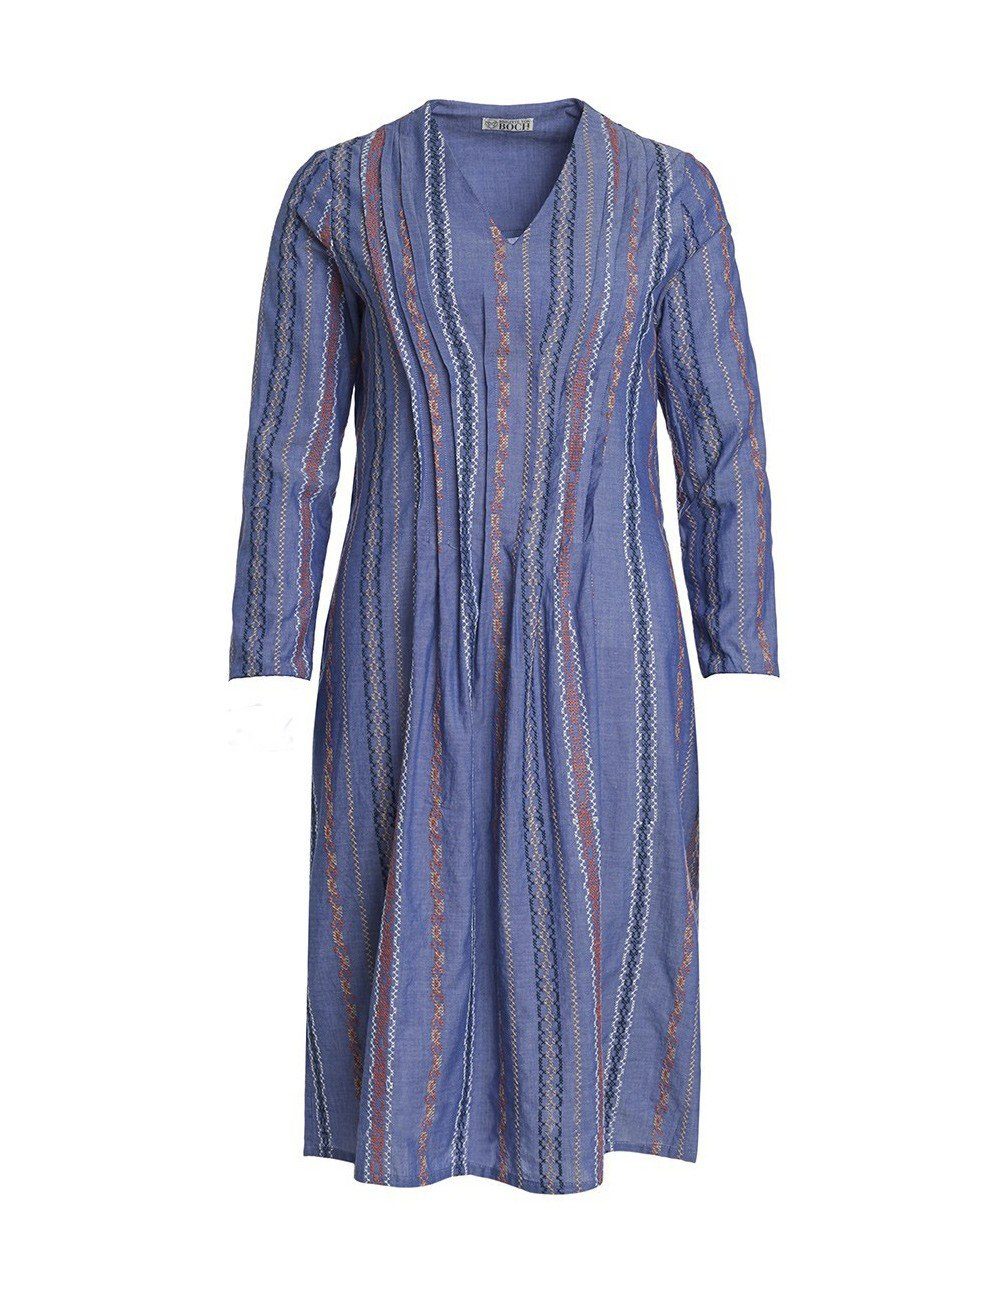 Brigitte blau Marnie Boch von Sommerkleid Kleid